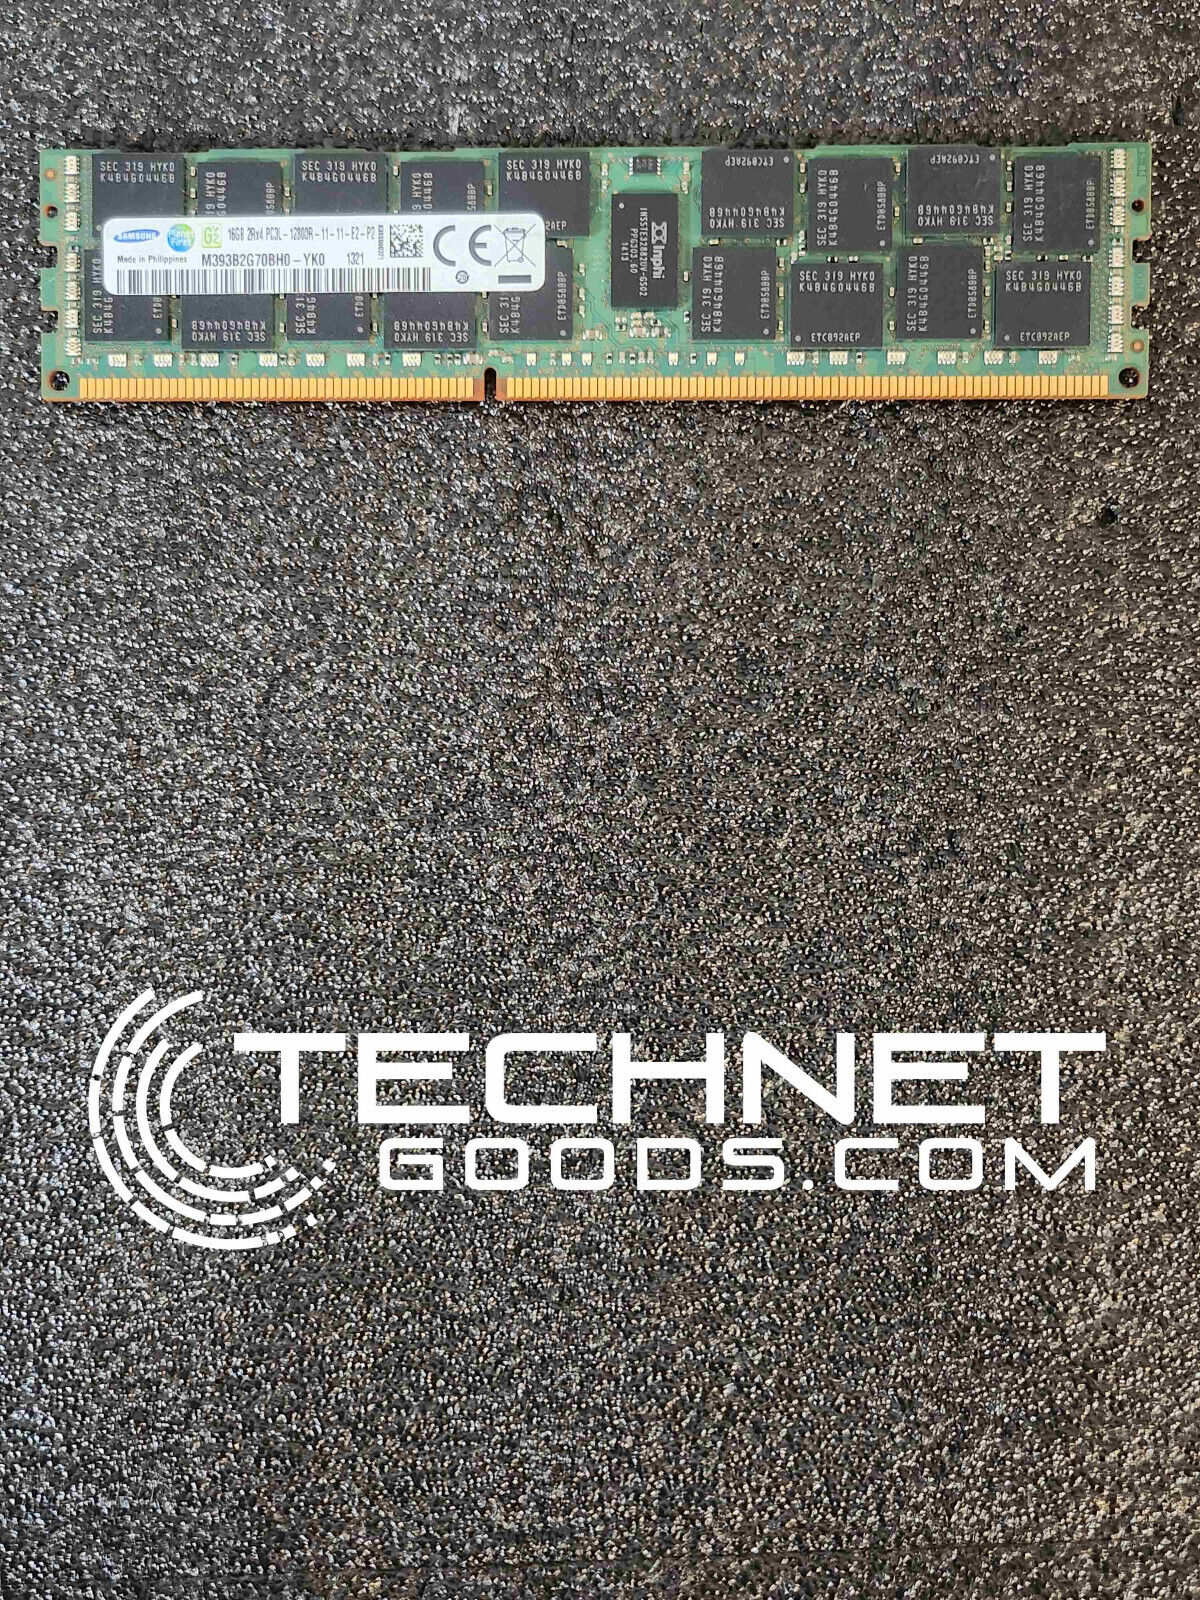 Samsung 1x16GB DDR3 1600MHz (M393B2G70BH0-YK0) ECC Server Memory - TESTED